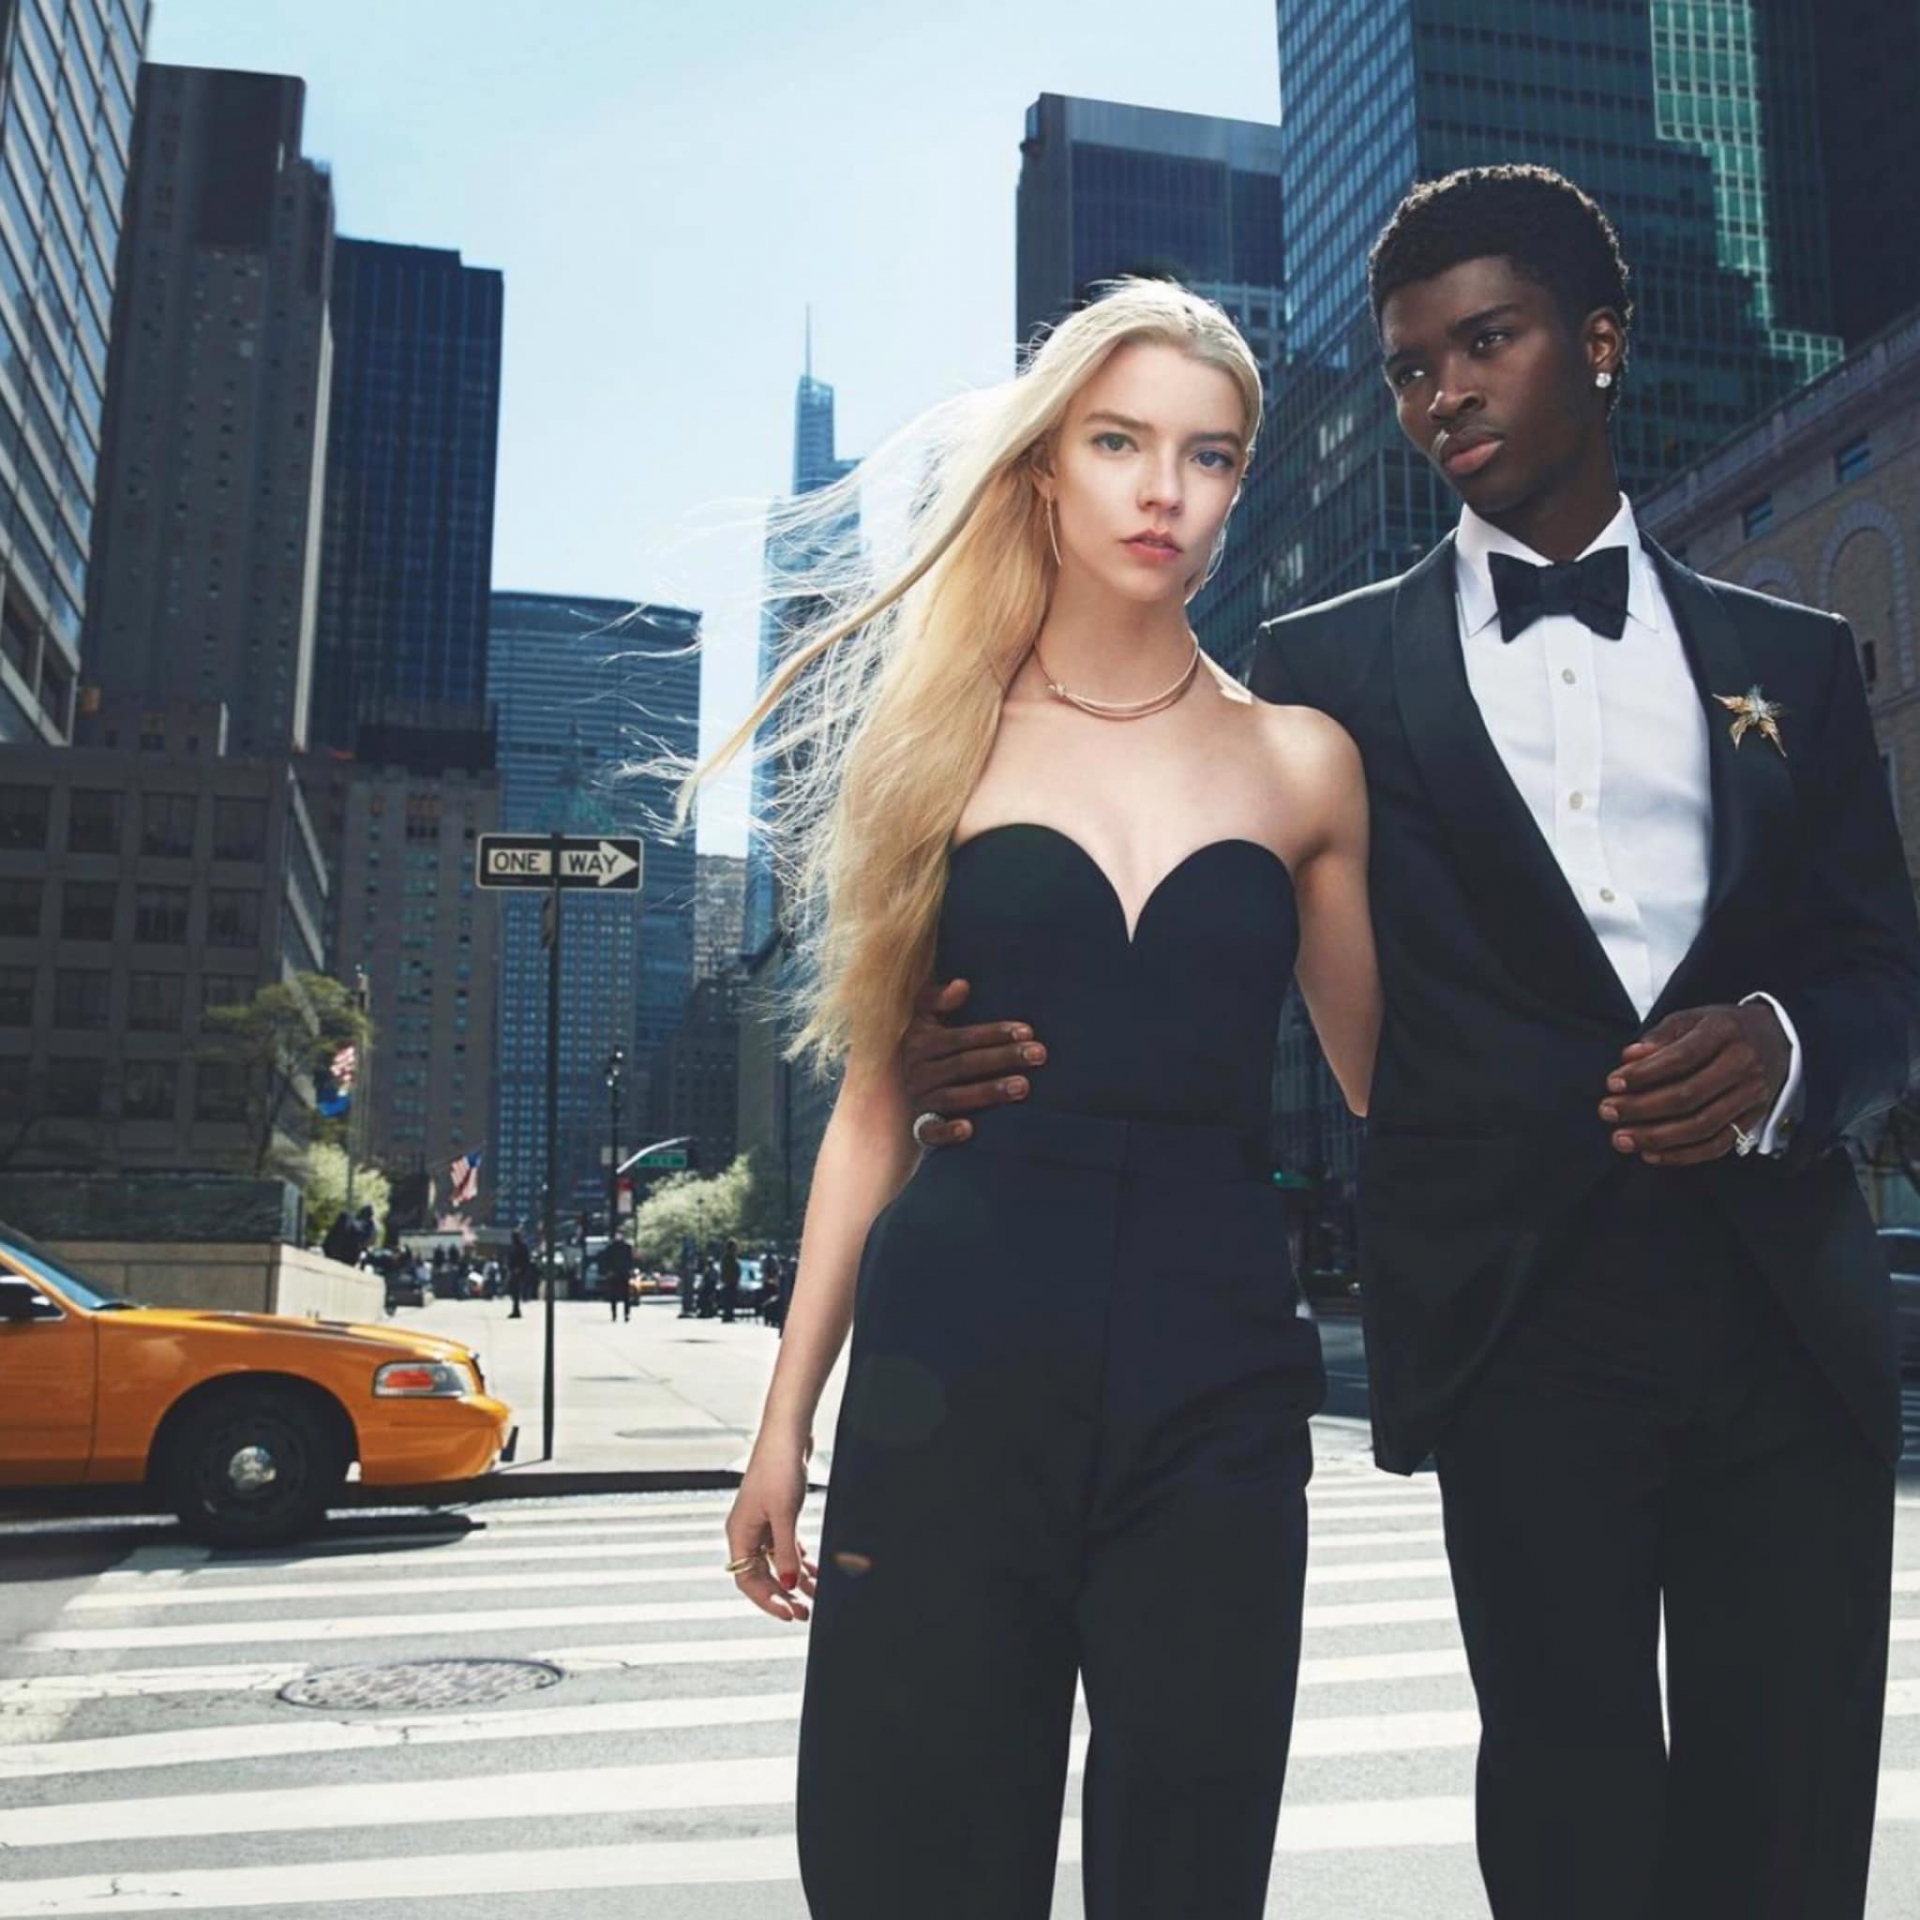 Tiffany & Co đã tung quảng bá cho BST mới Tiffany Knot với Anya Taylor - Joy là nhân vật chính. Giữa phố phường New York năng động, cô nàng thả dáng trong bộ jumpsuit đơn giản, đeo những trang sức đắt tiền của hãng.